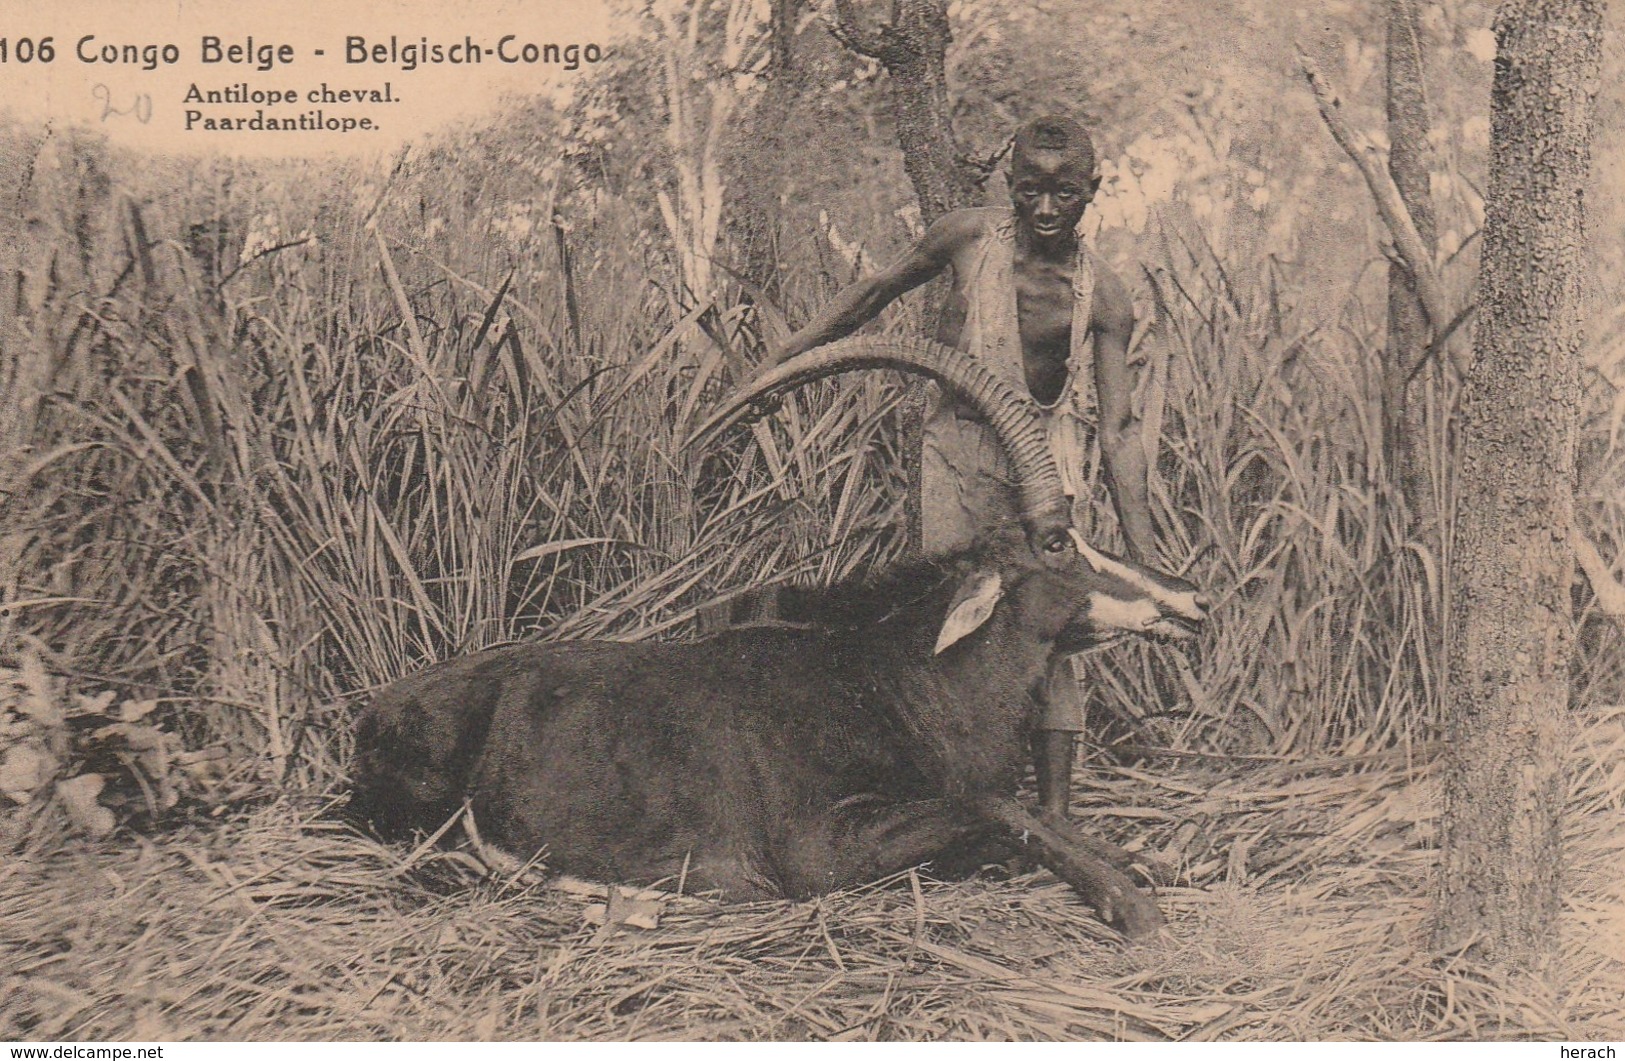 Congo Belge Entier Postal Illustré Pour La France 1922 - Entiers Postaux